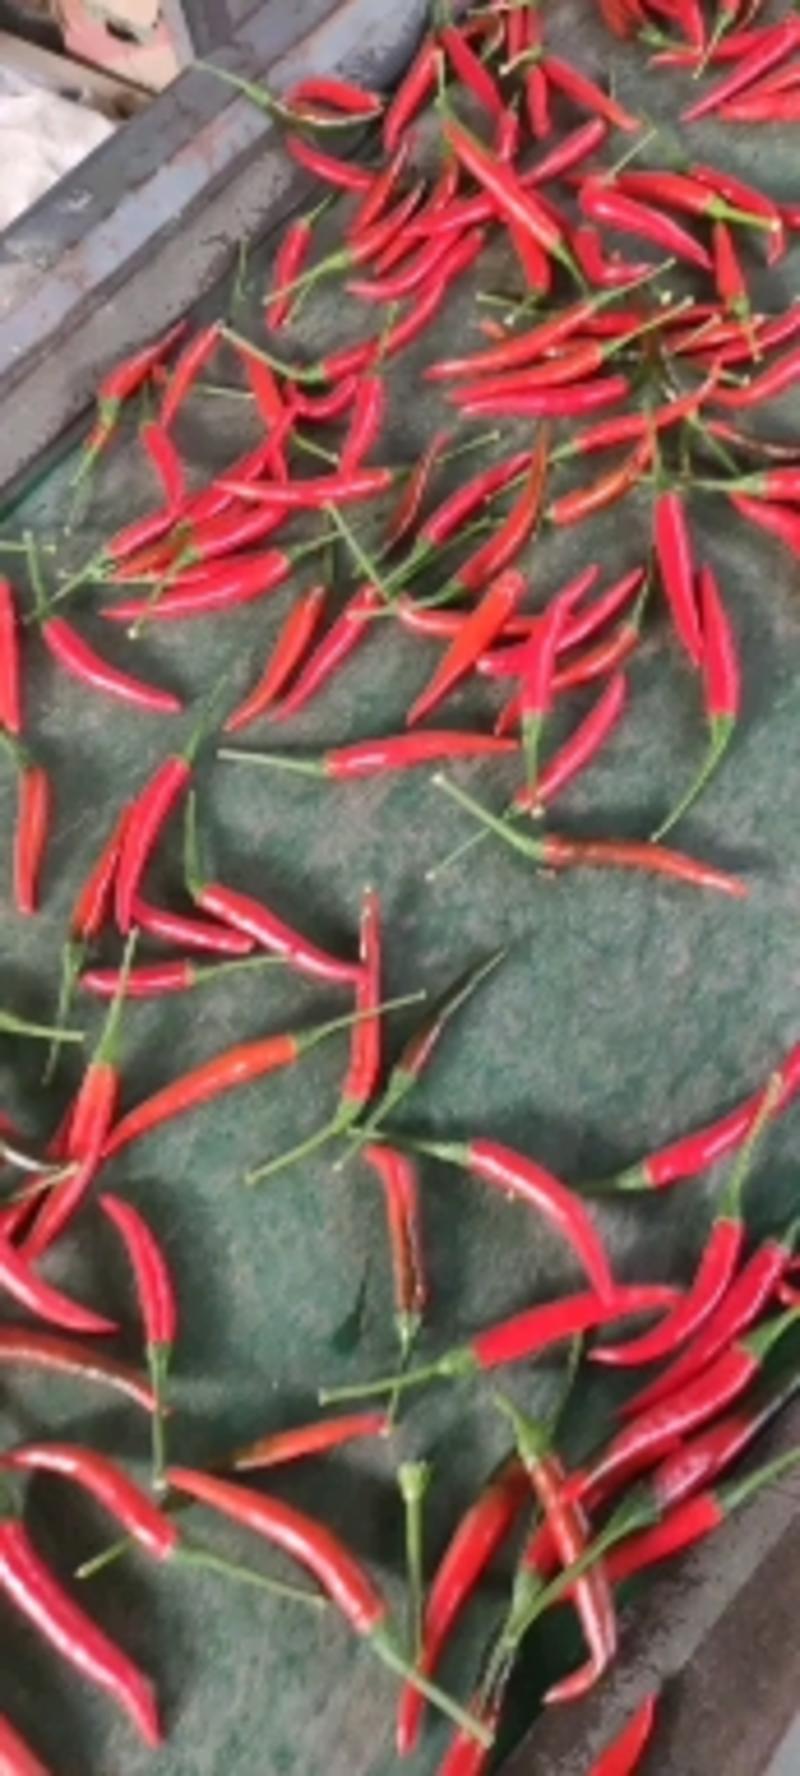 艳红种子天香90朝天椒种子。果大顺直，高产抗病，硬度好。